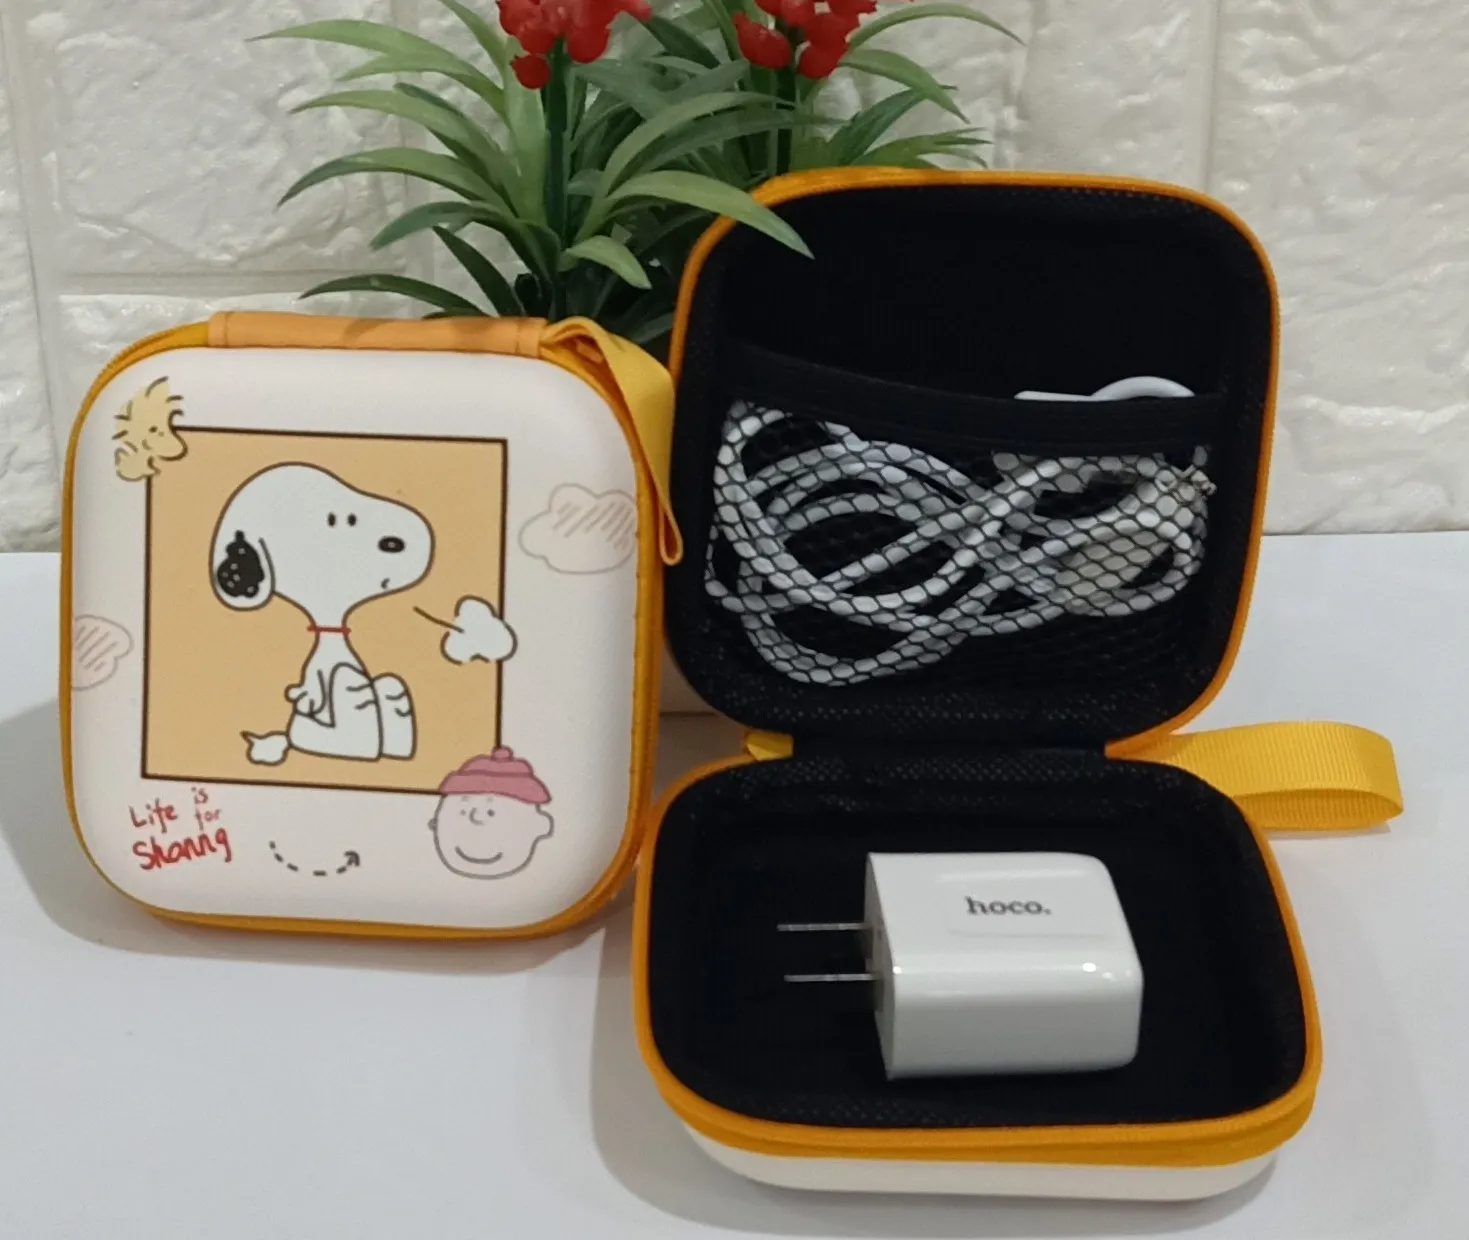 กล่องเก็บหูฟัง สายชาร์จ หัวชาร์จ  ใช้งานได้เอนกประสงค์ Size M ลาย Snoopy  น่ารักน่าใช้ ขนาด 9.5x9.5x3.5cm